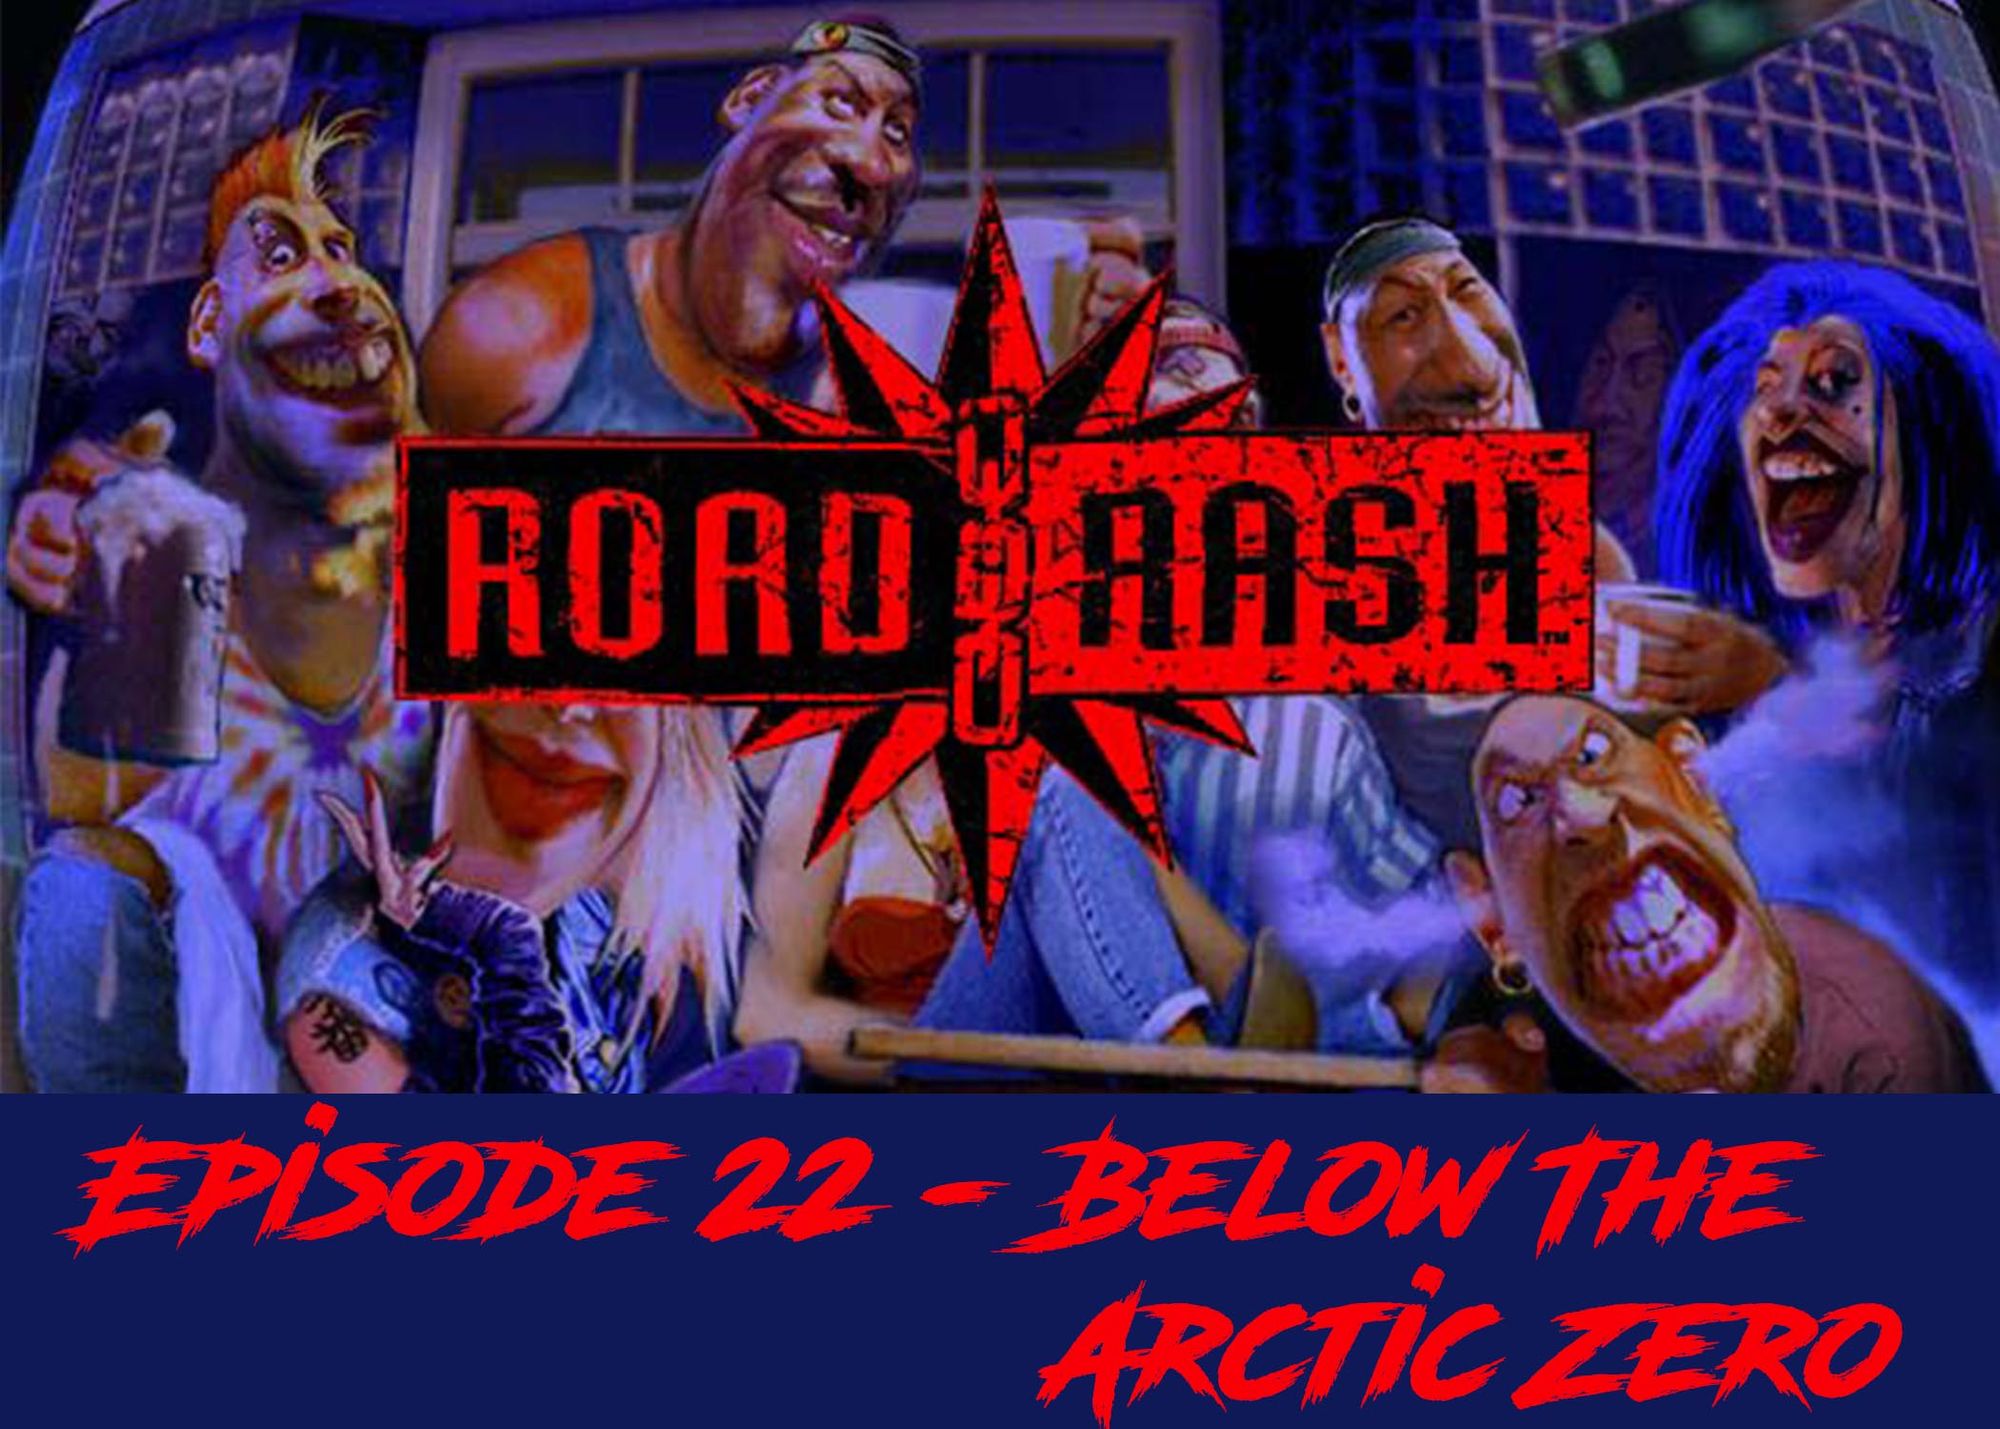 Episode 22 - Below The Arctic Zero